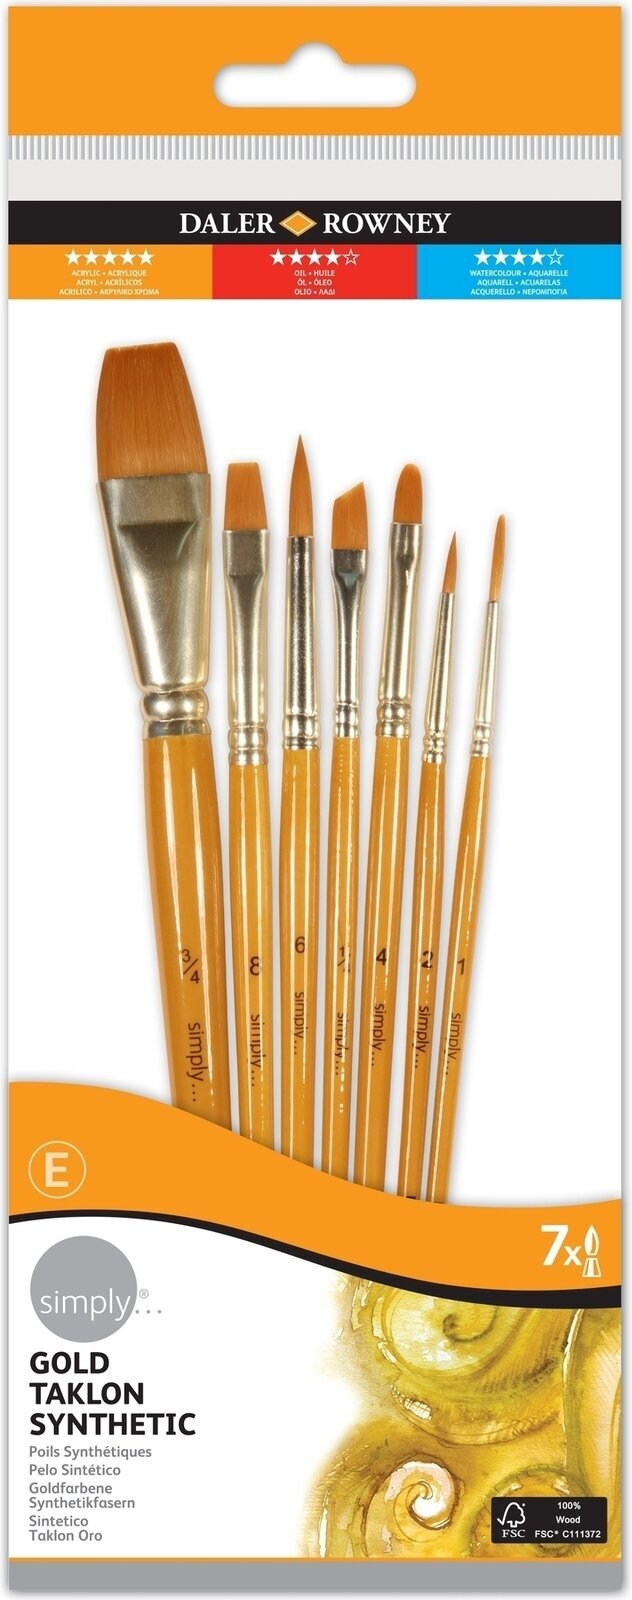 Πινέλα Daler Rowney Simply Acrylic Brush Gold Taklon Synthetic Σετ πινέλων 1 τεμ.